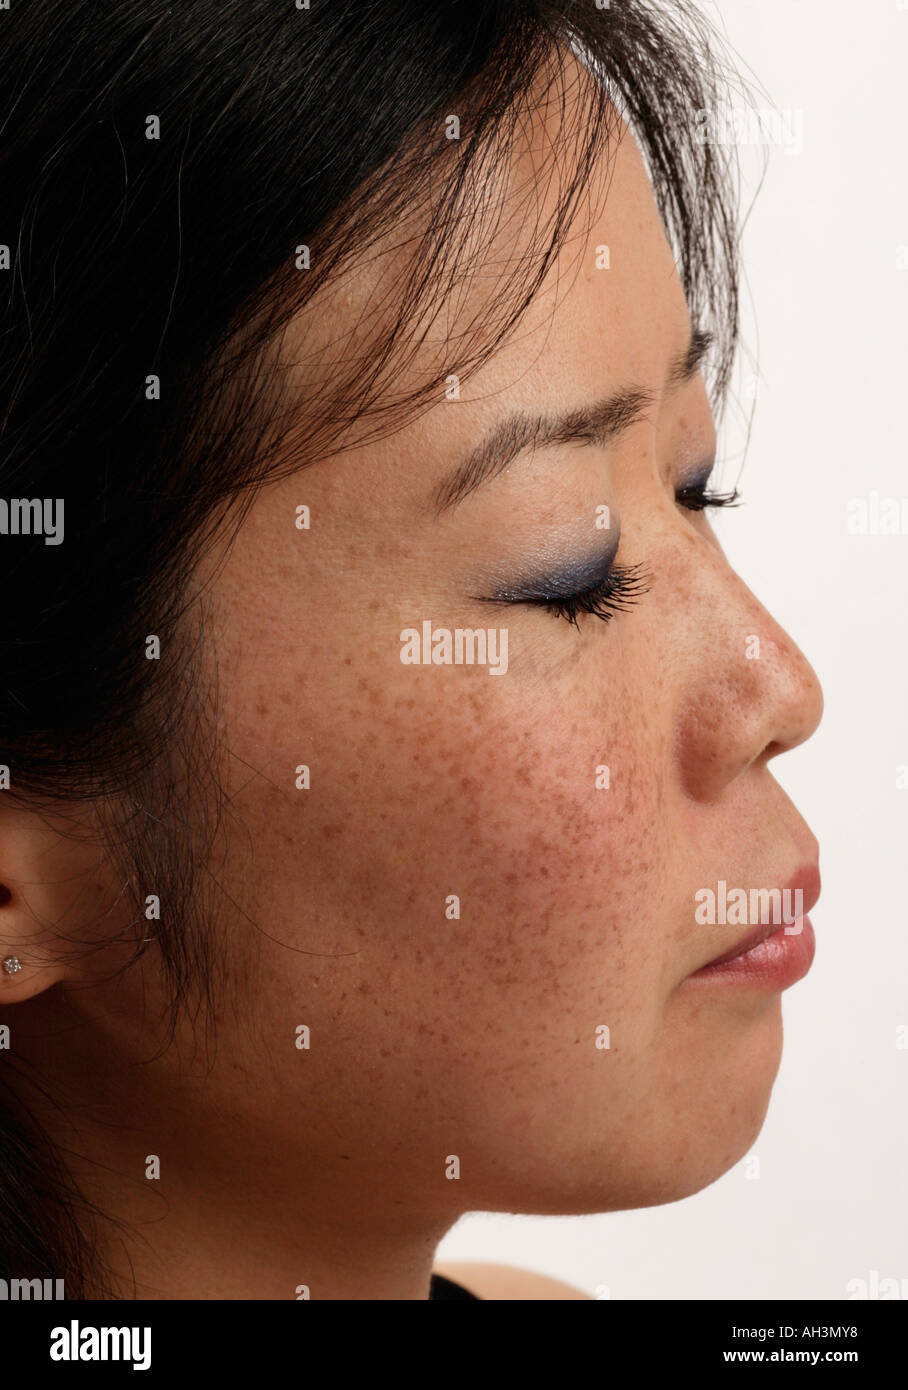 Eine junge asiatische oder japanische Frau mit Sommersprossen sie hat ihre Augen geschlossen und ruht Stockfoto